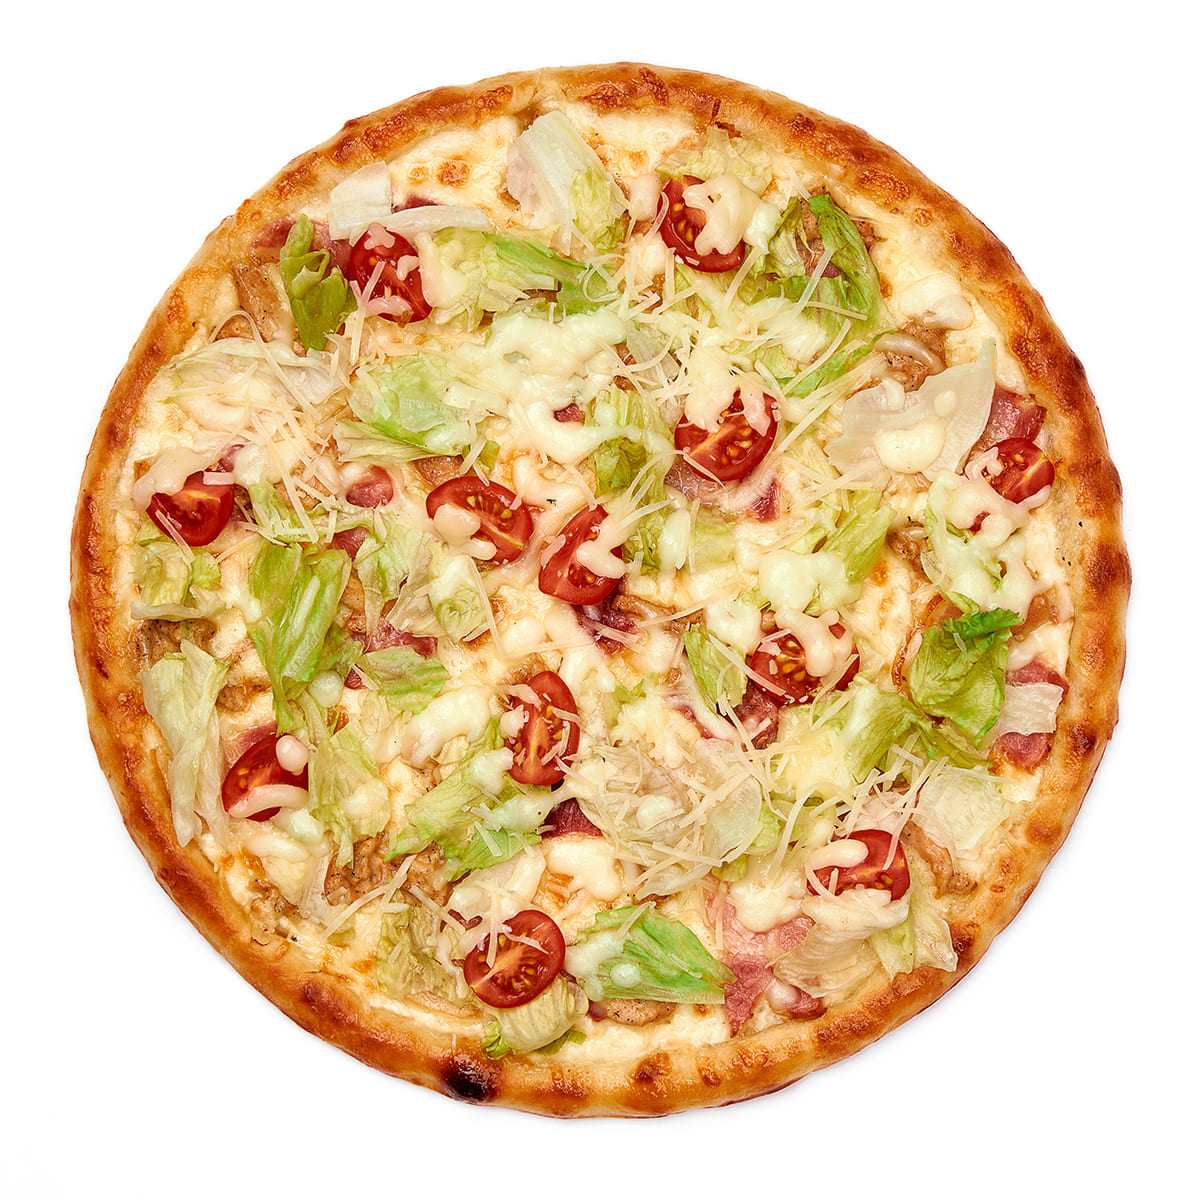 наконец то я могу заказать пиццу с салатом цезарь из курицы фото 59